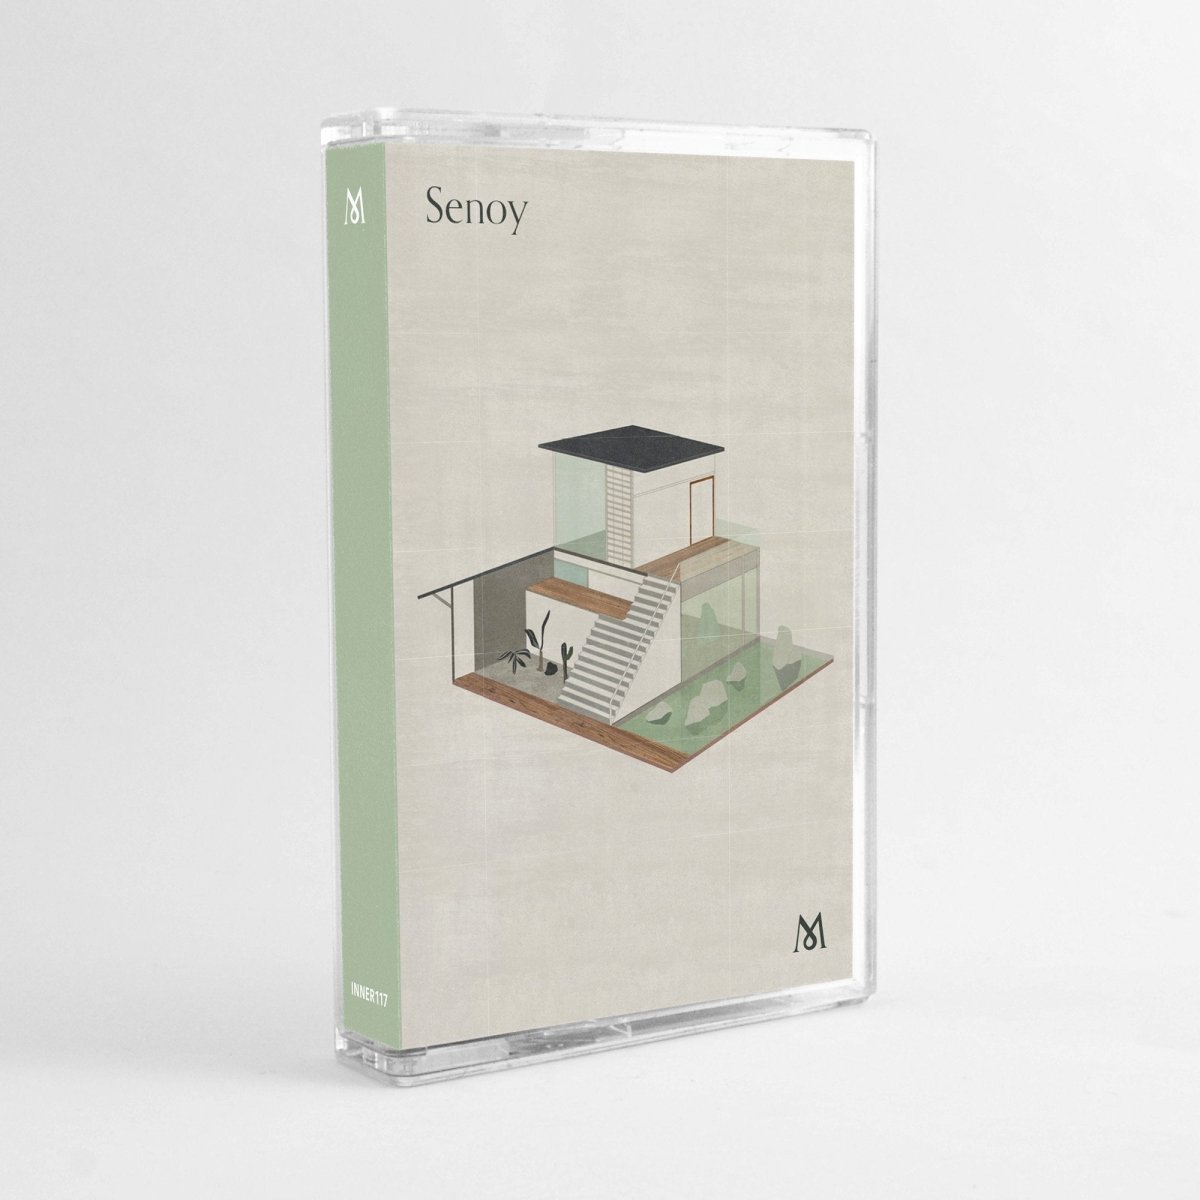 Senoy - M - Inner Ocean Records